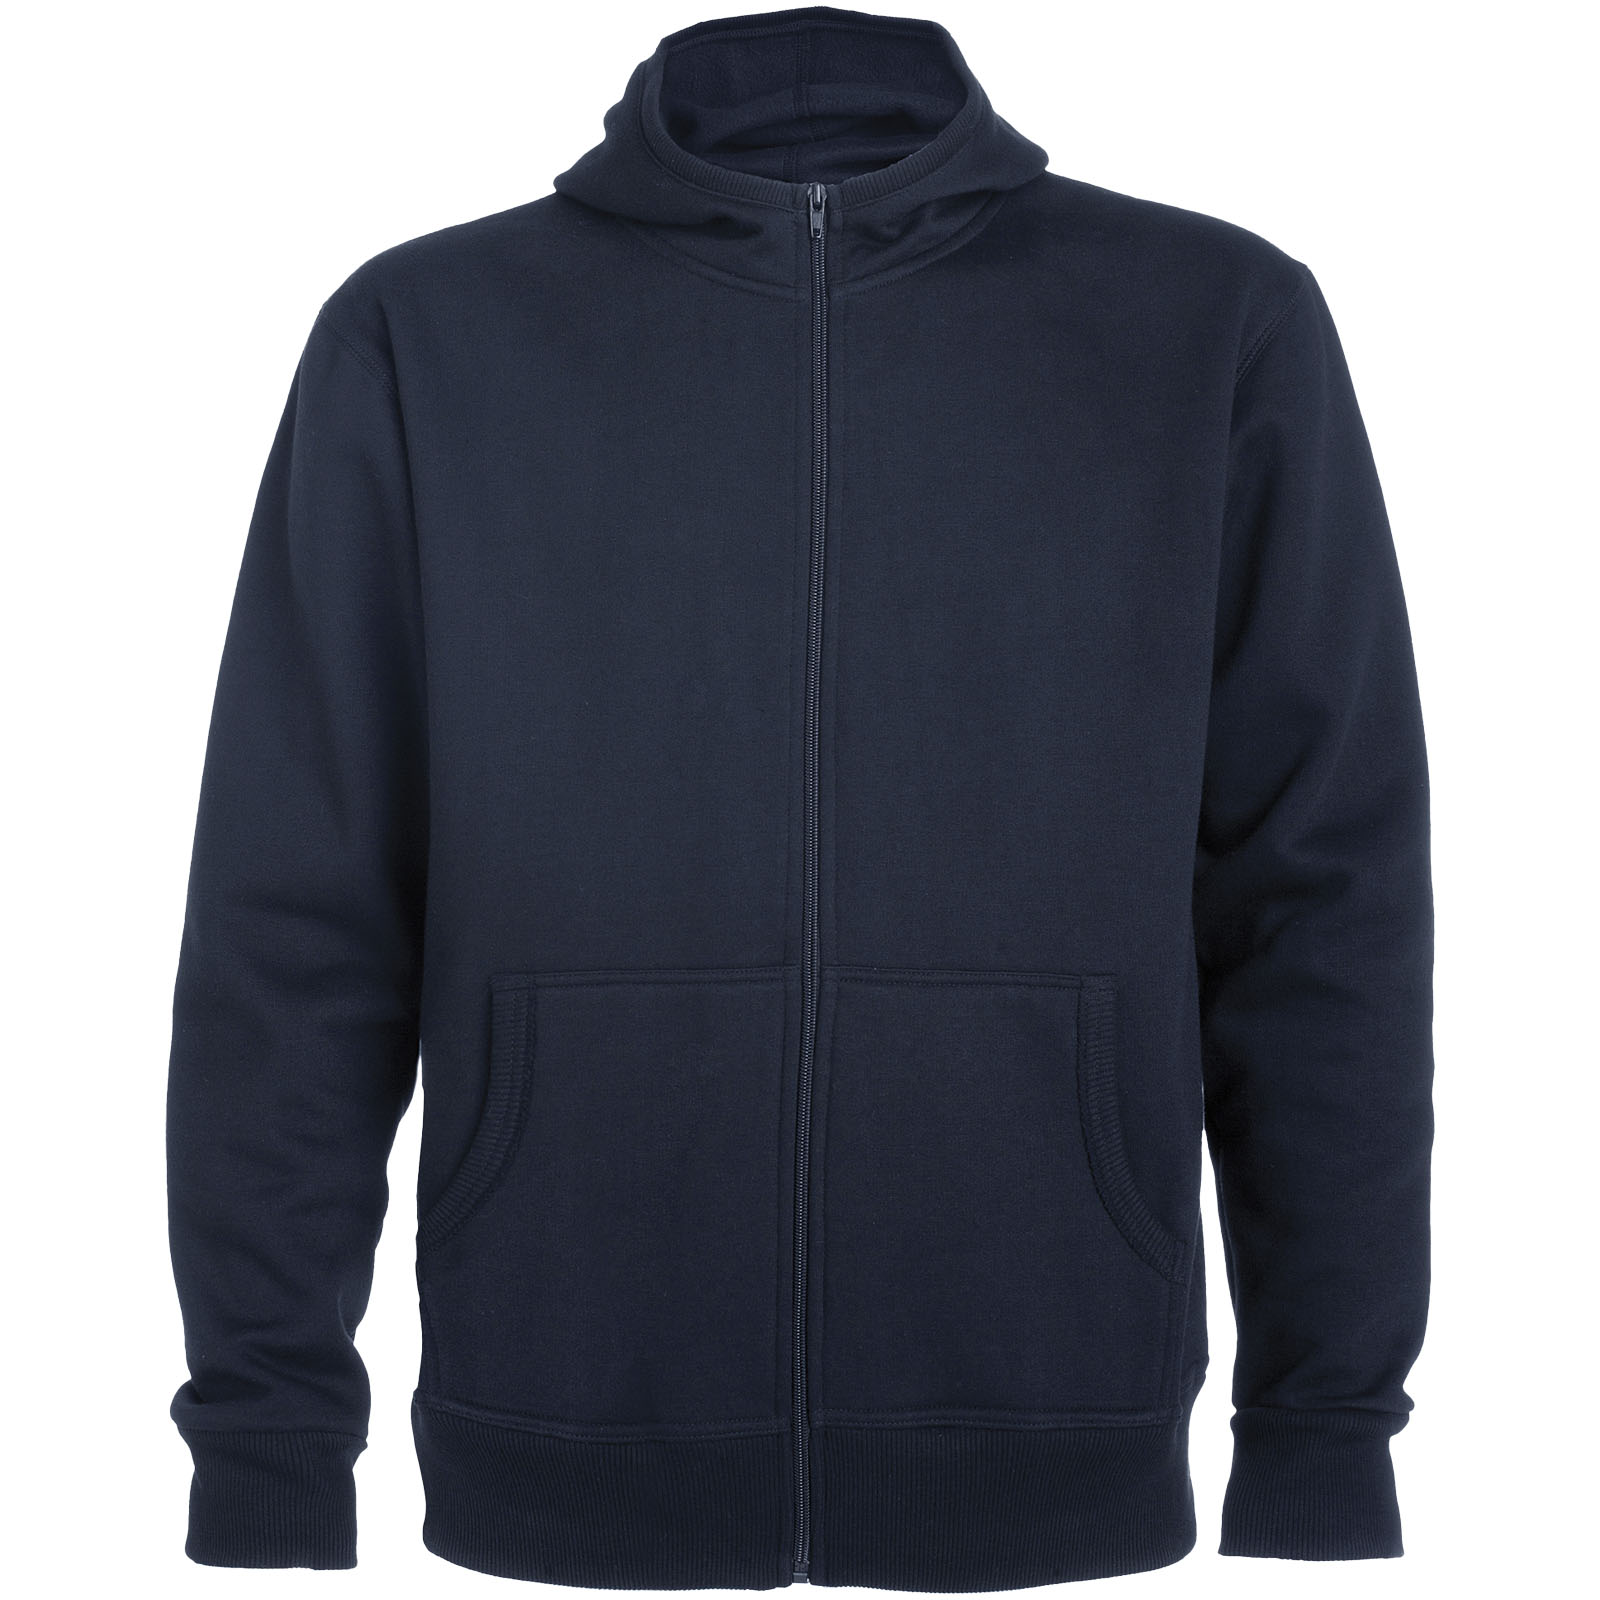 Advertising Hoodies - Montblanc unisex full zip hoodie - 0